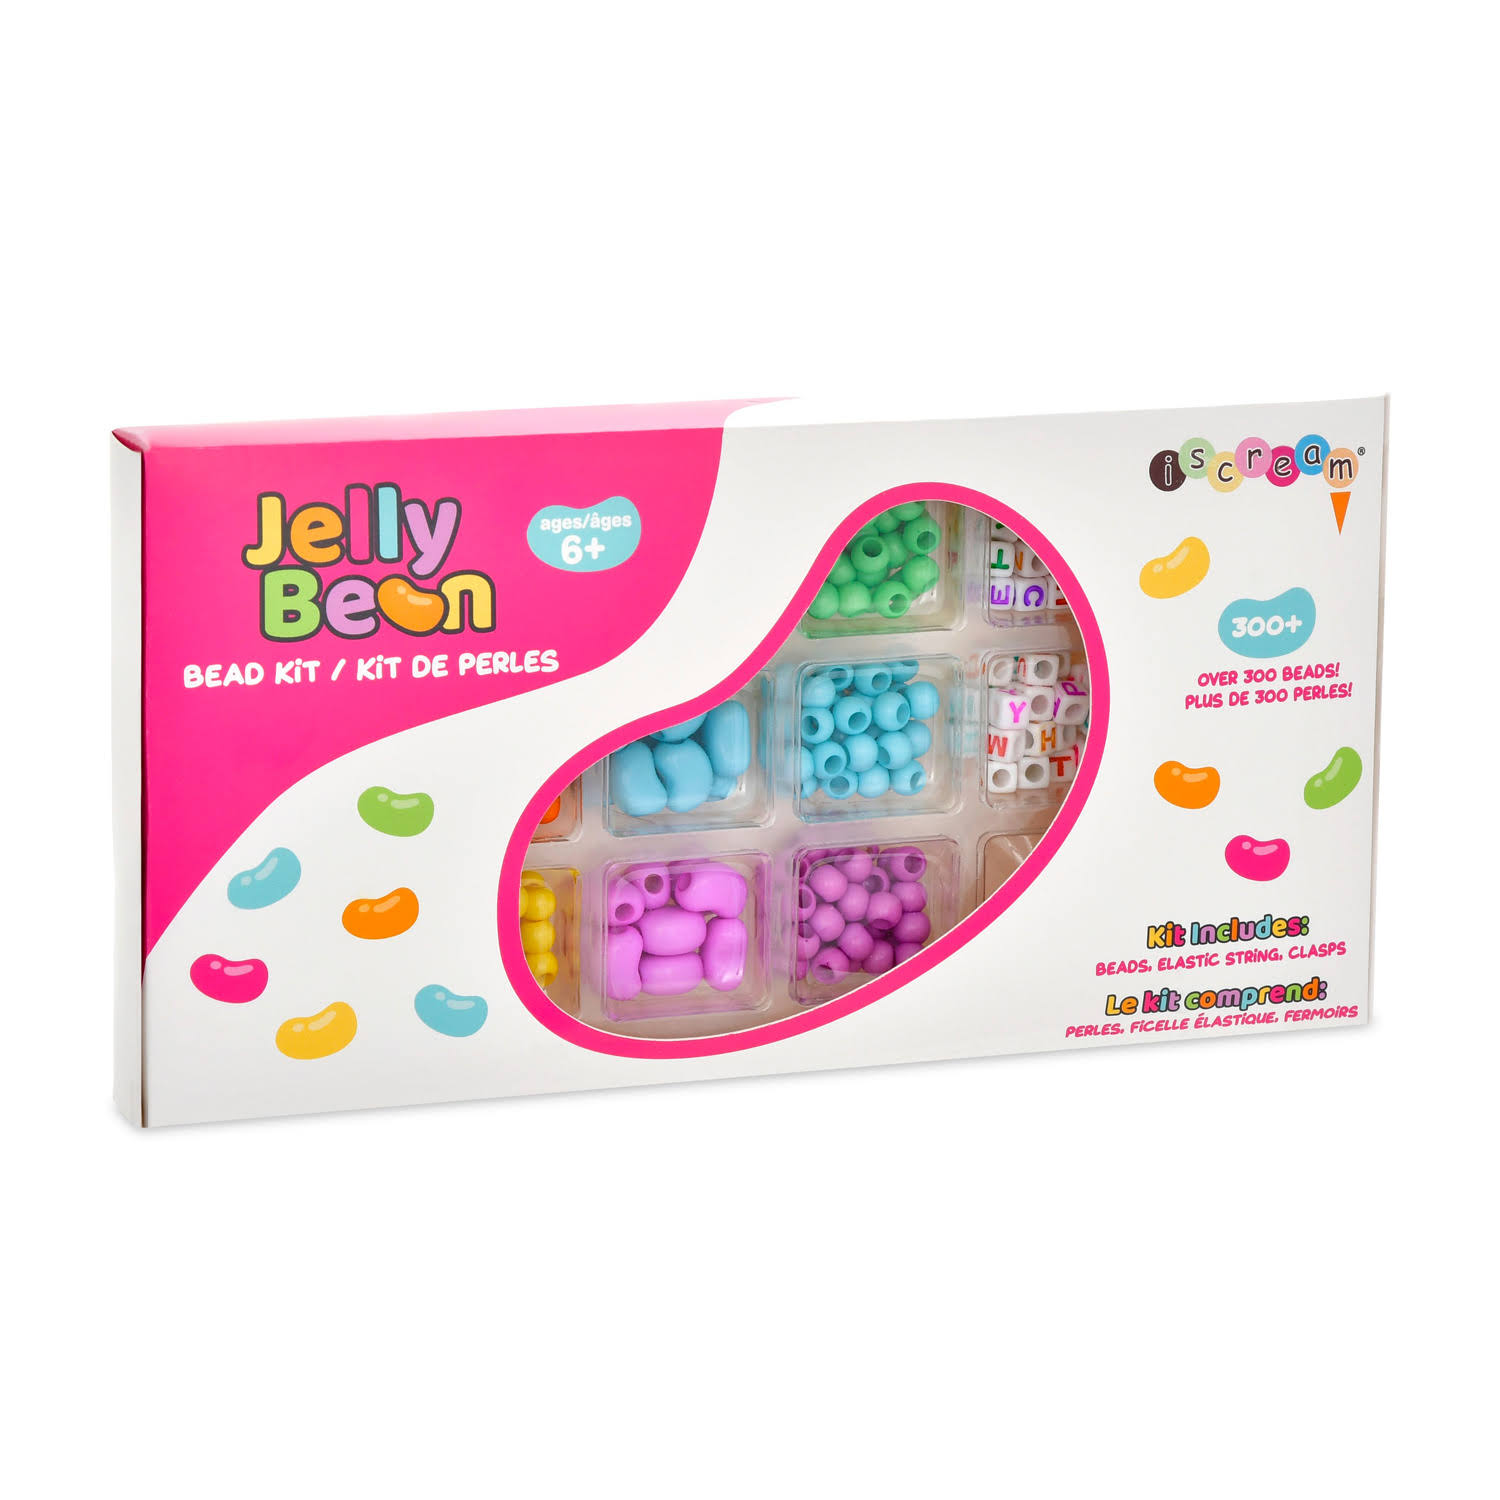 iScream Jelly Bean Bead Kit